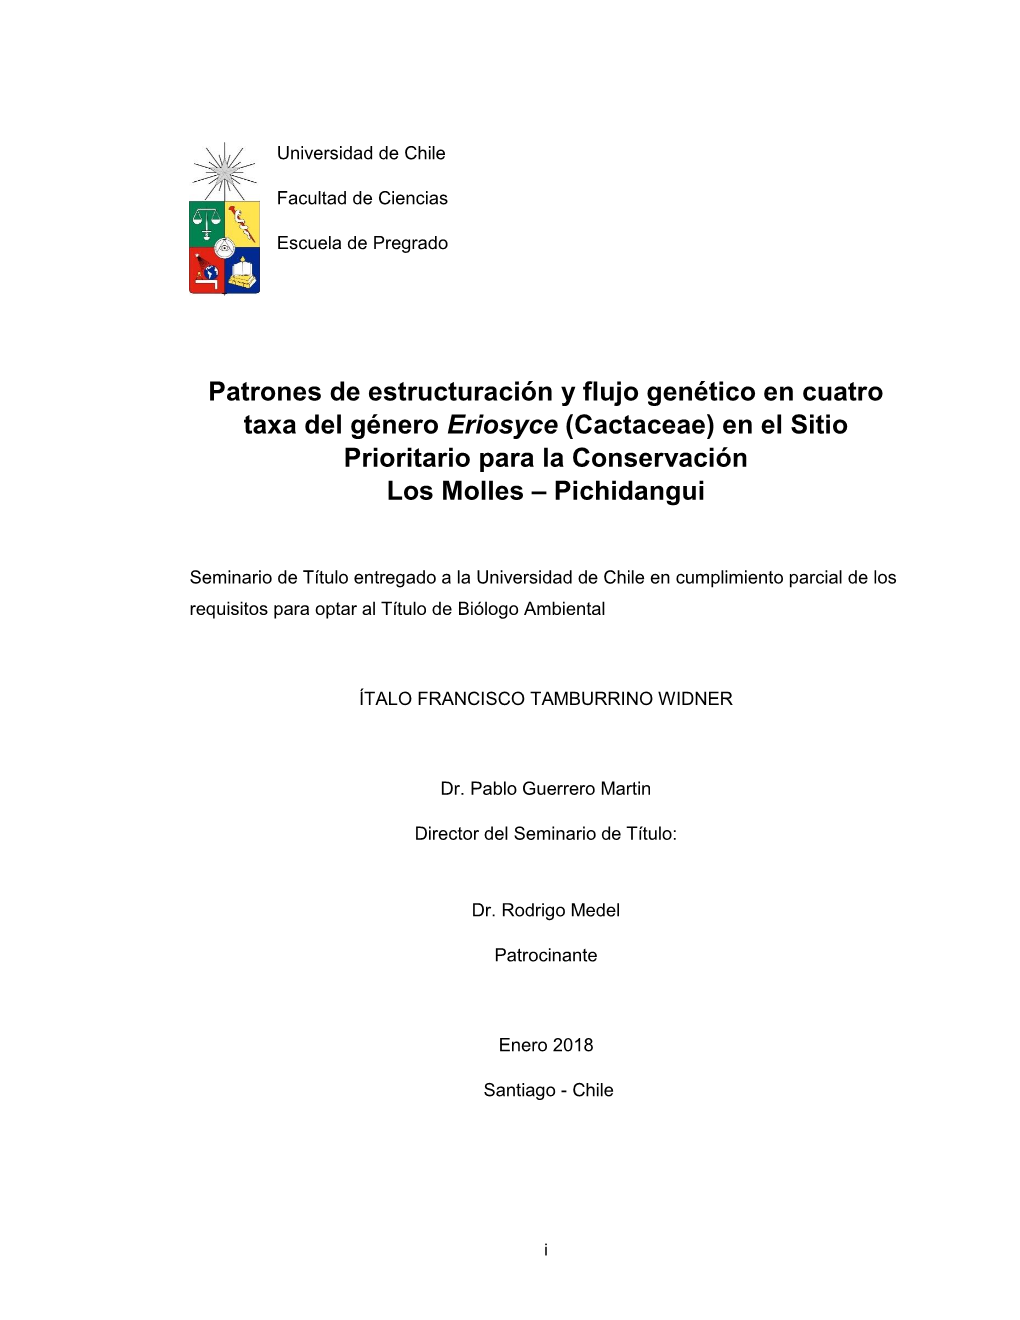 Patrones De Estructuración Y Flujo Genético En Cuatro Taxa Del Género Eriosyce (Cactaceae) En El Sitio Prioritario Para La Conservación Los Molles – Pichidangui